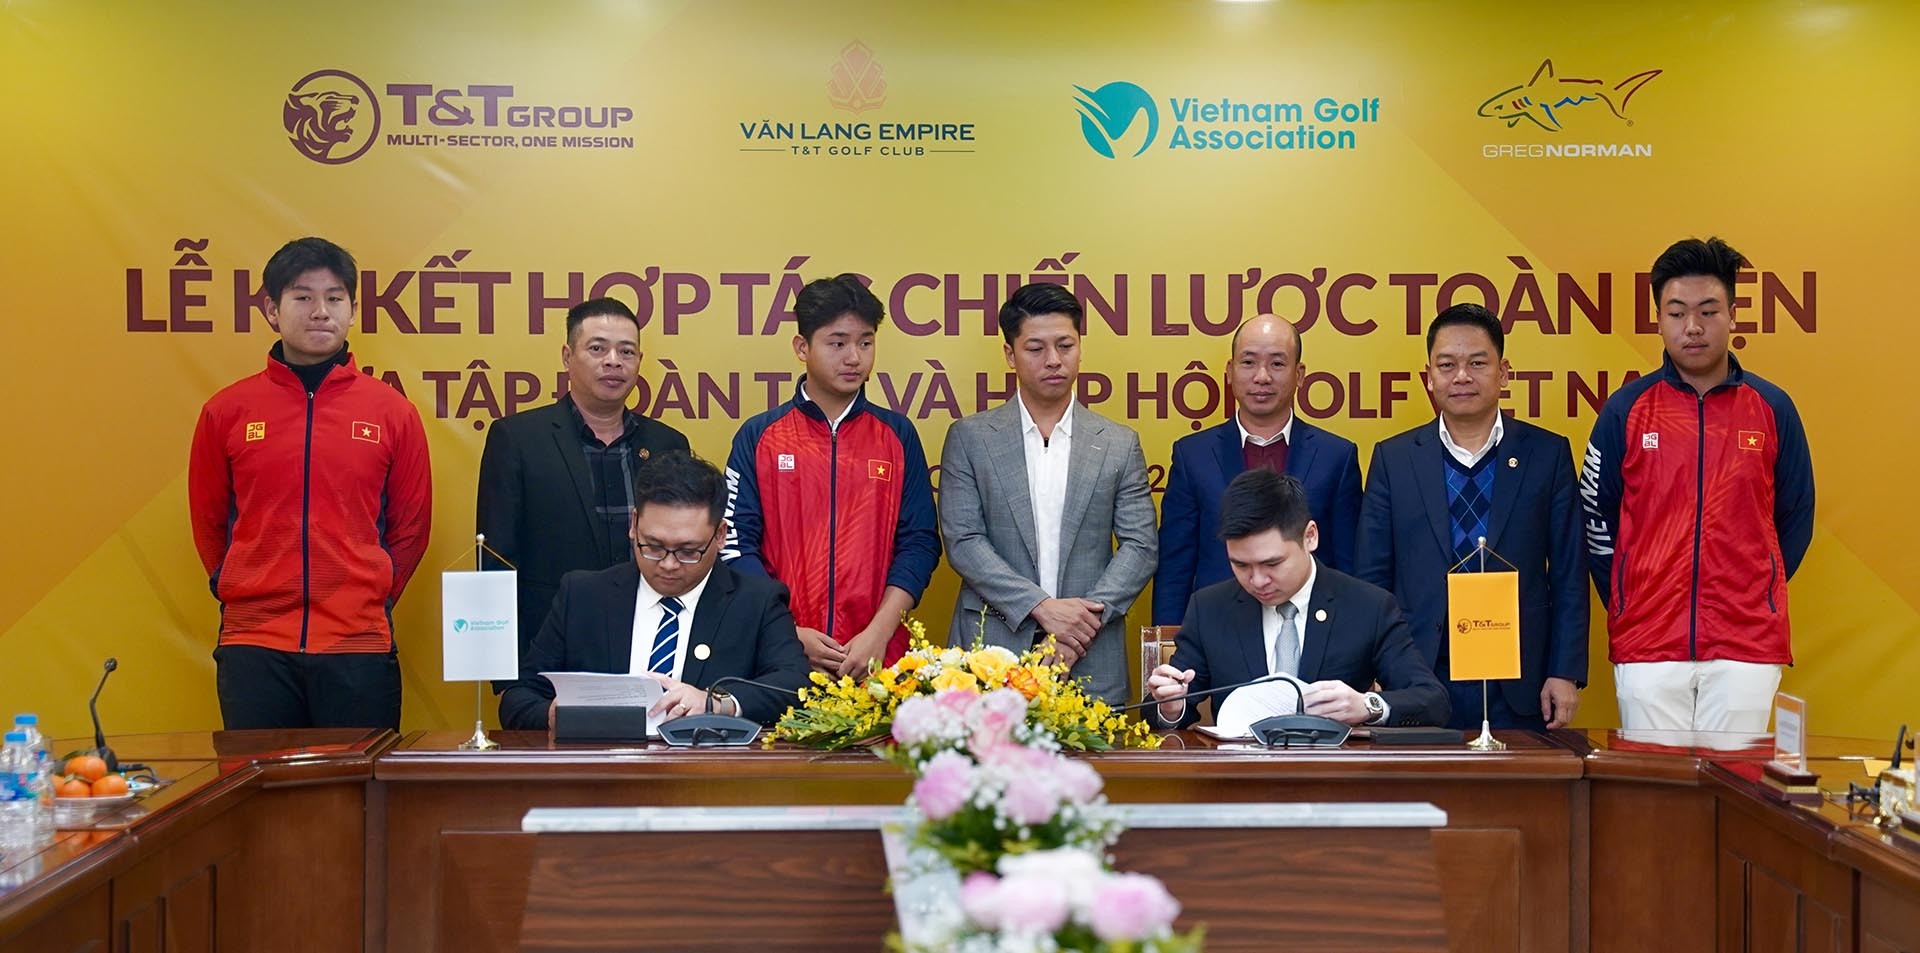 Tập đoàn T&T Group ký kết hợp tác chiến lược toàn diện với Hiệp hội Golf Việt Nam